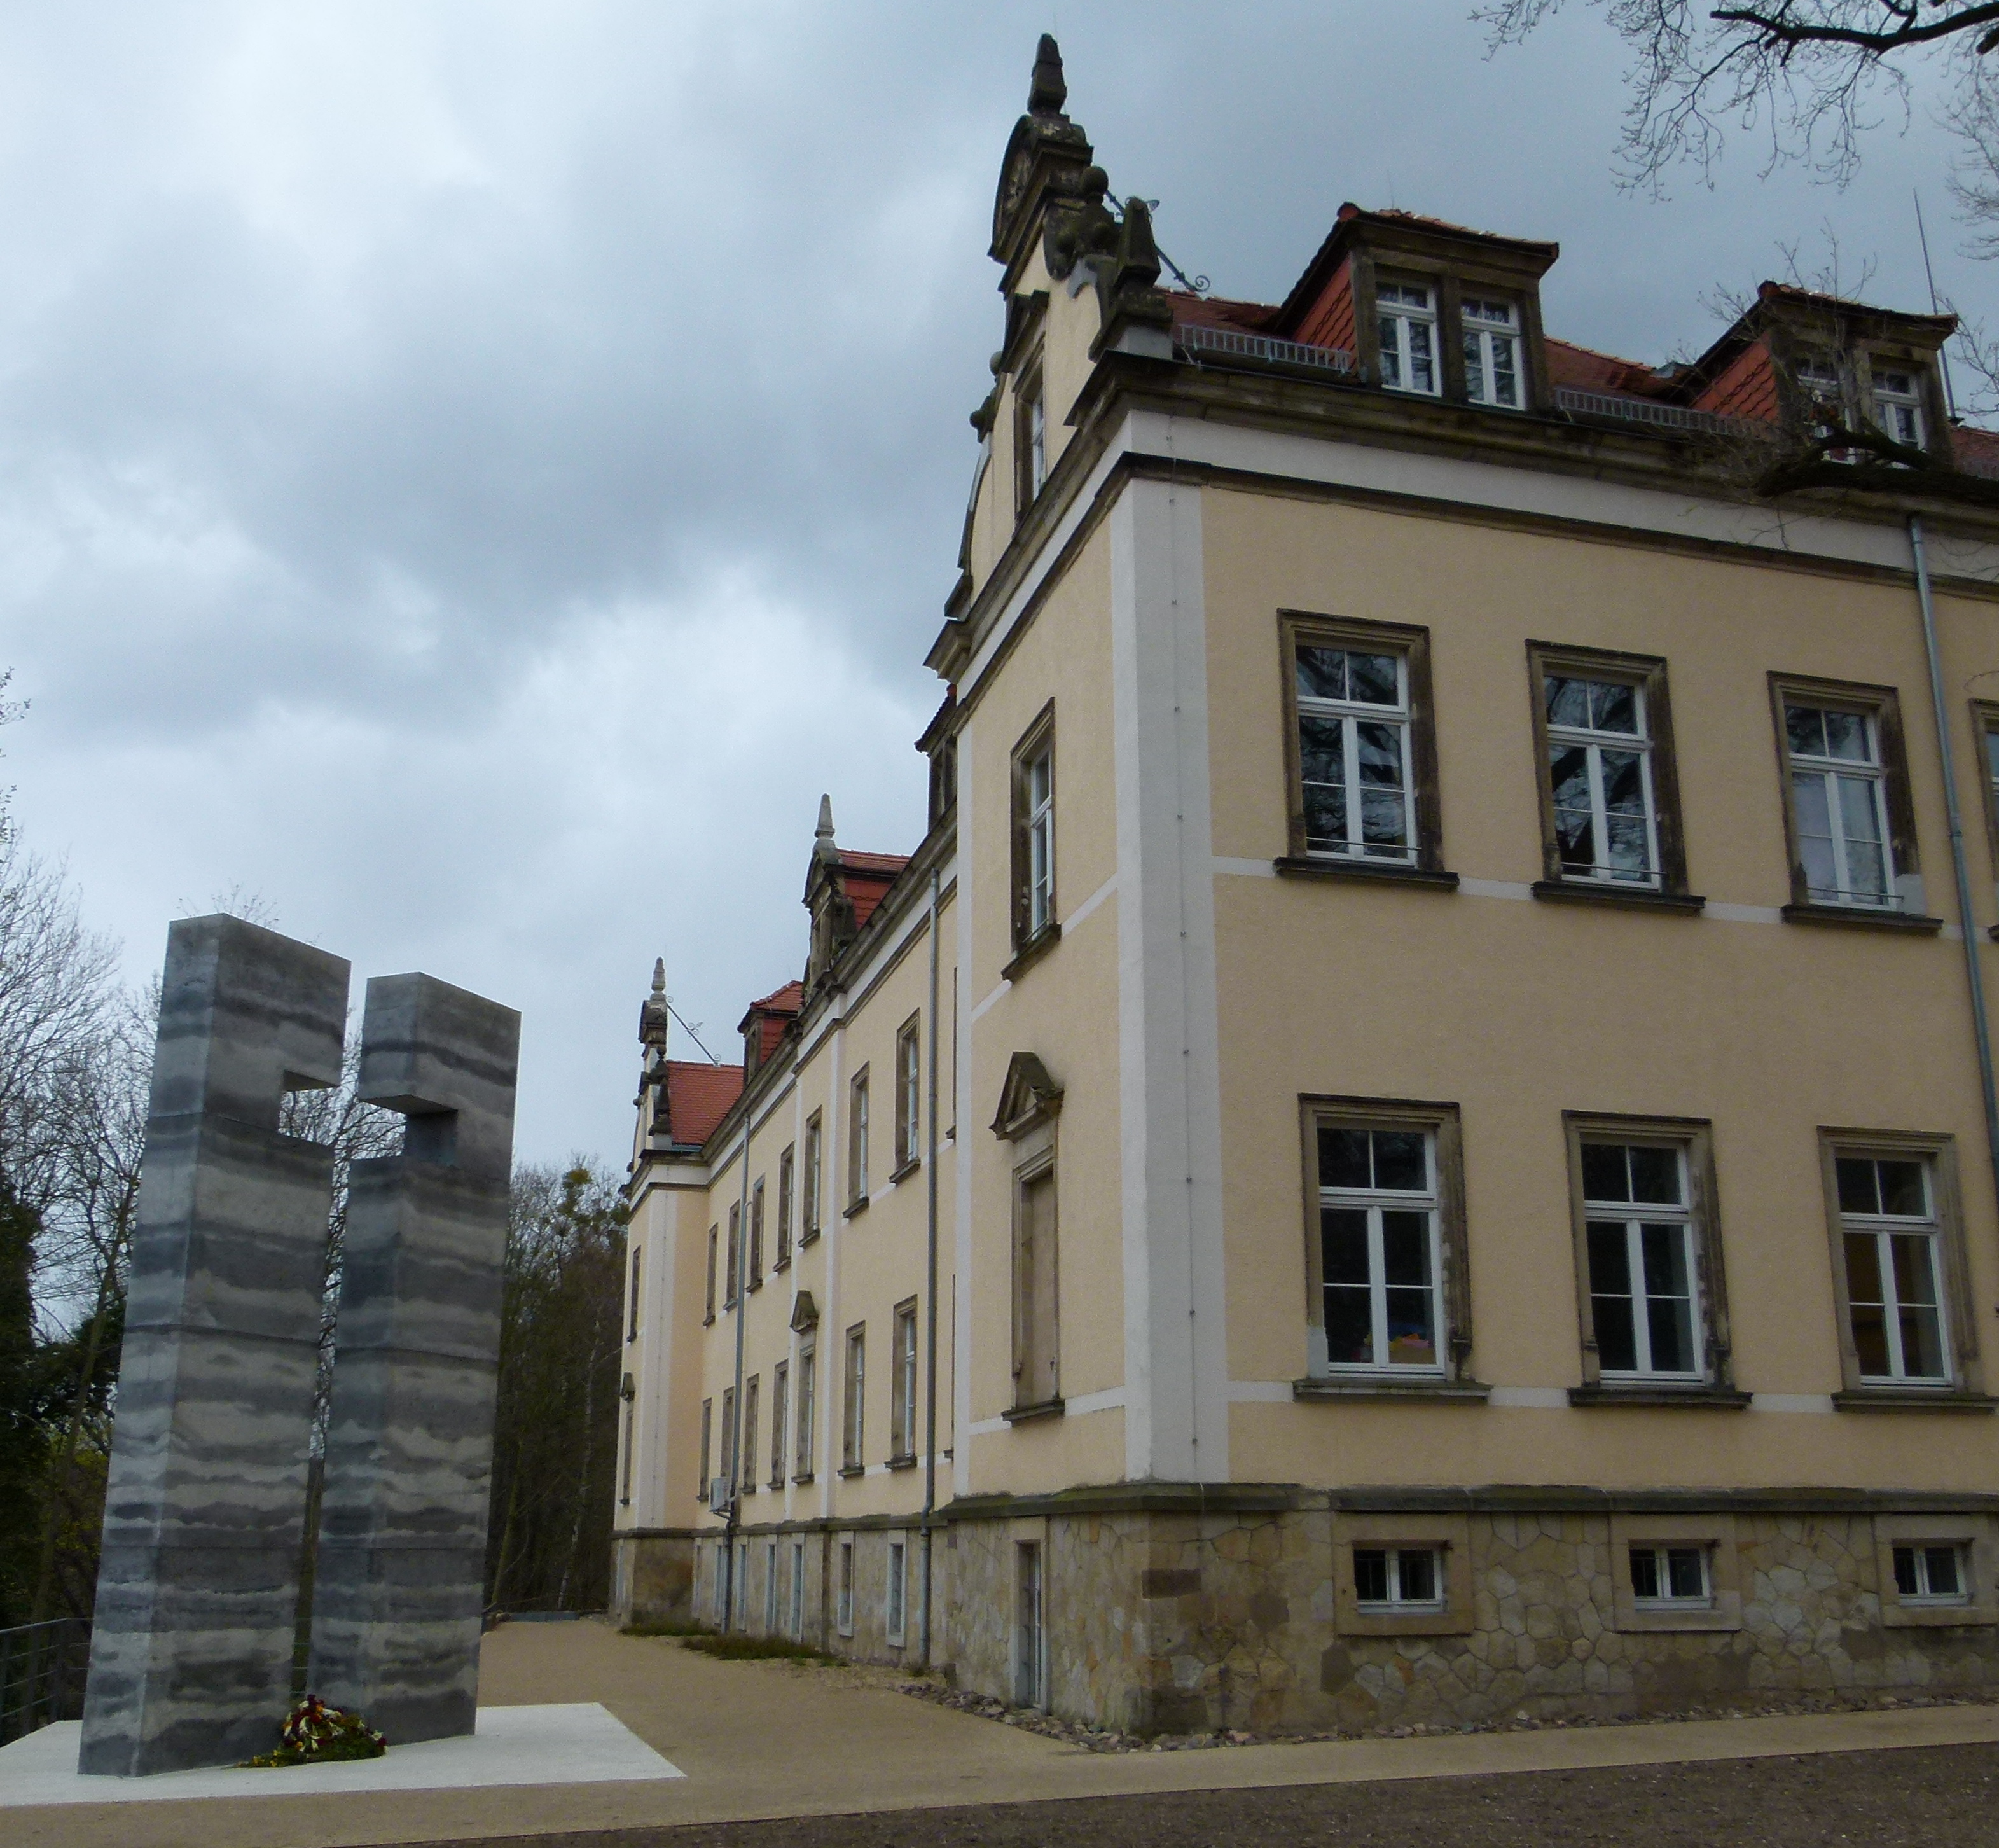 Euthanasie-Gedenkstätte in der ehem. Tötungsanstalt Pirna-Sonnenstein